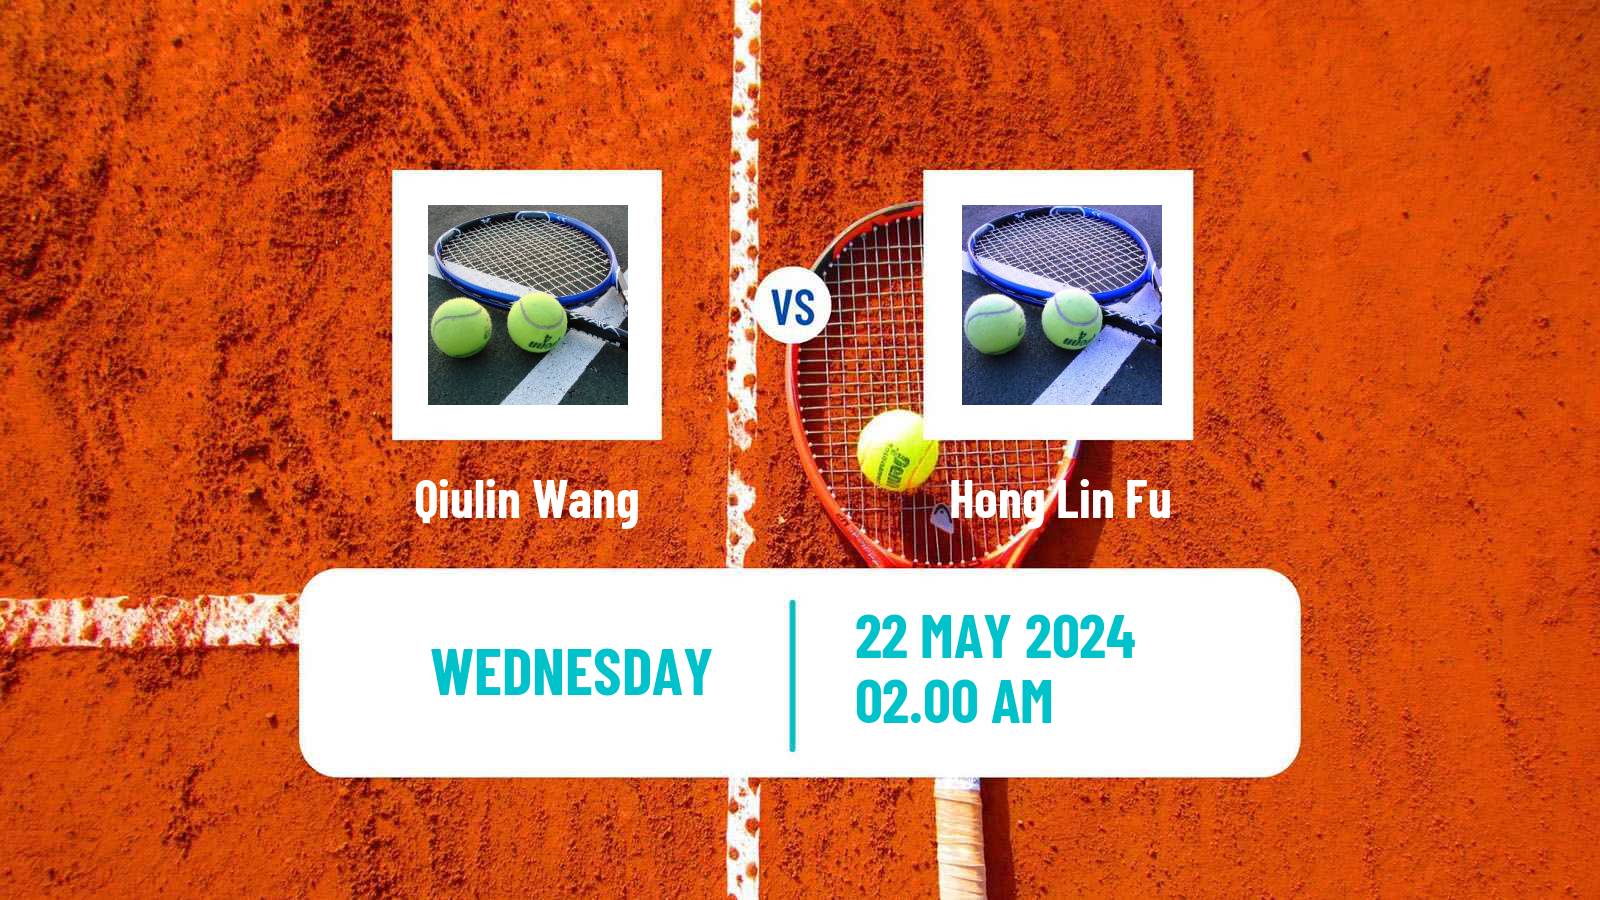 Tennis ITF M25 Anning Men Qiulin Wang - Hong Lin Fu